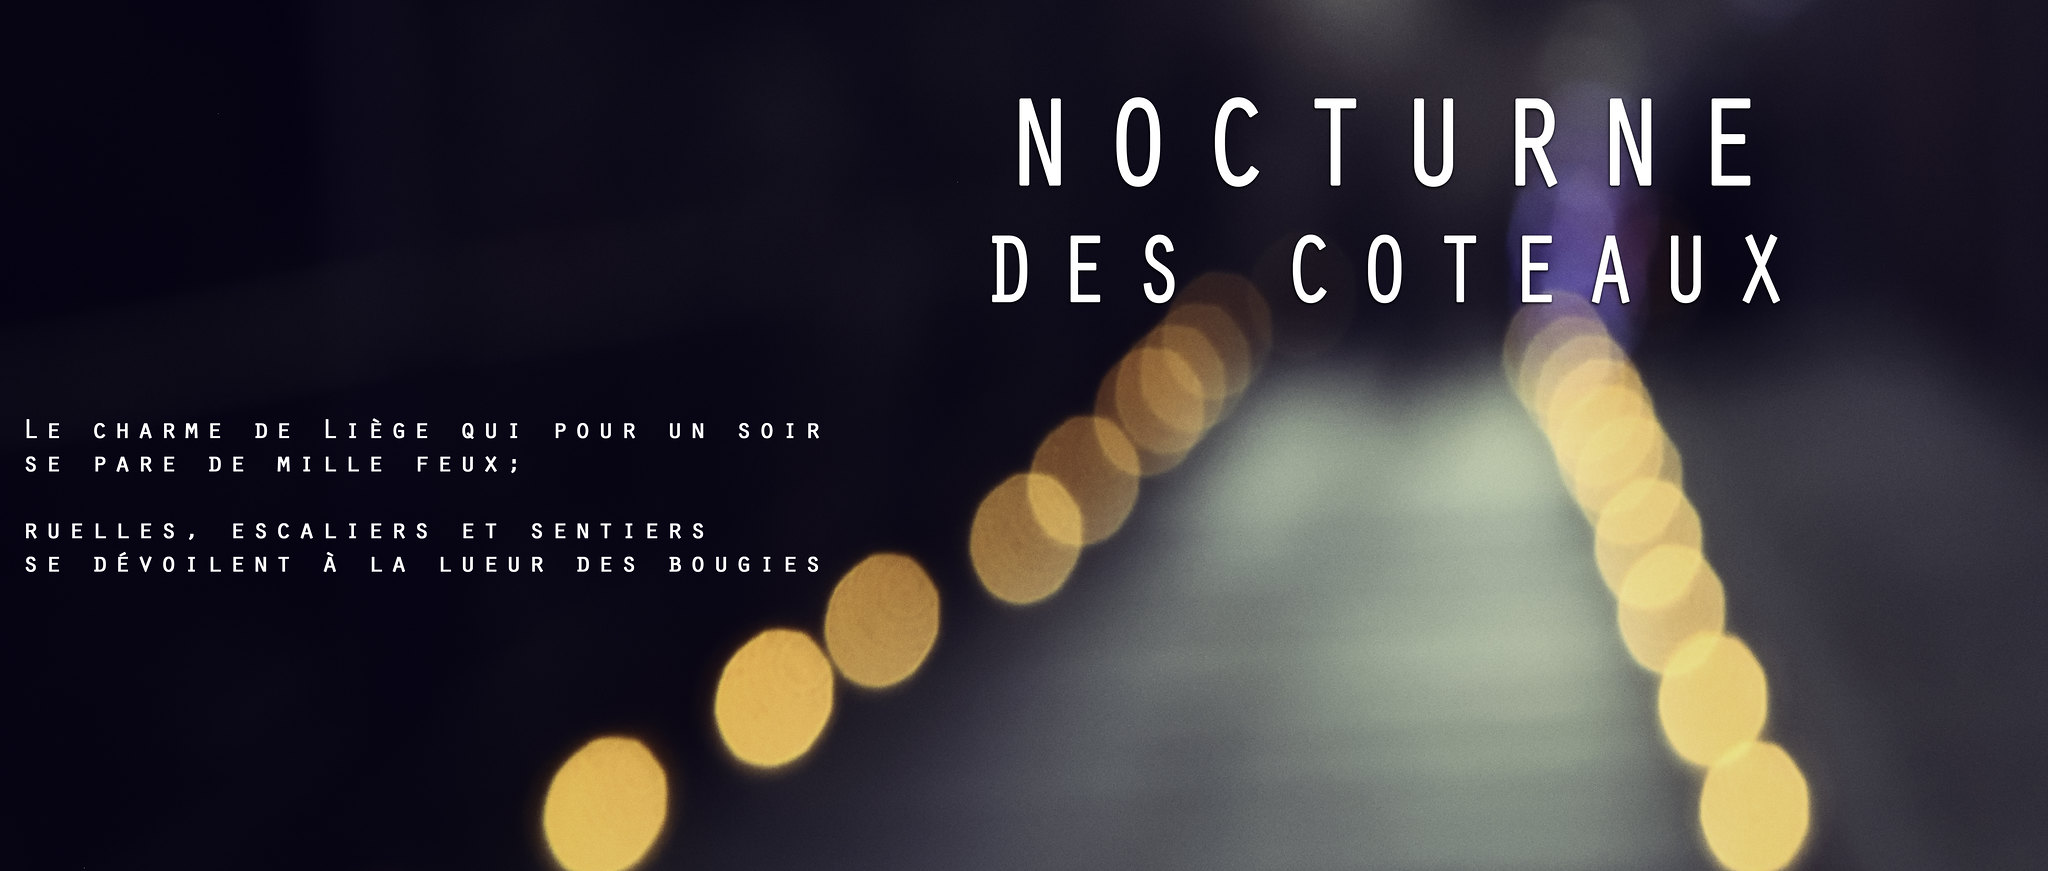 Nocturne des coteaux - affiche [Click to start slideshow]